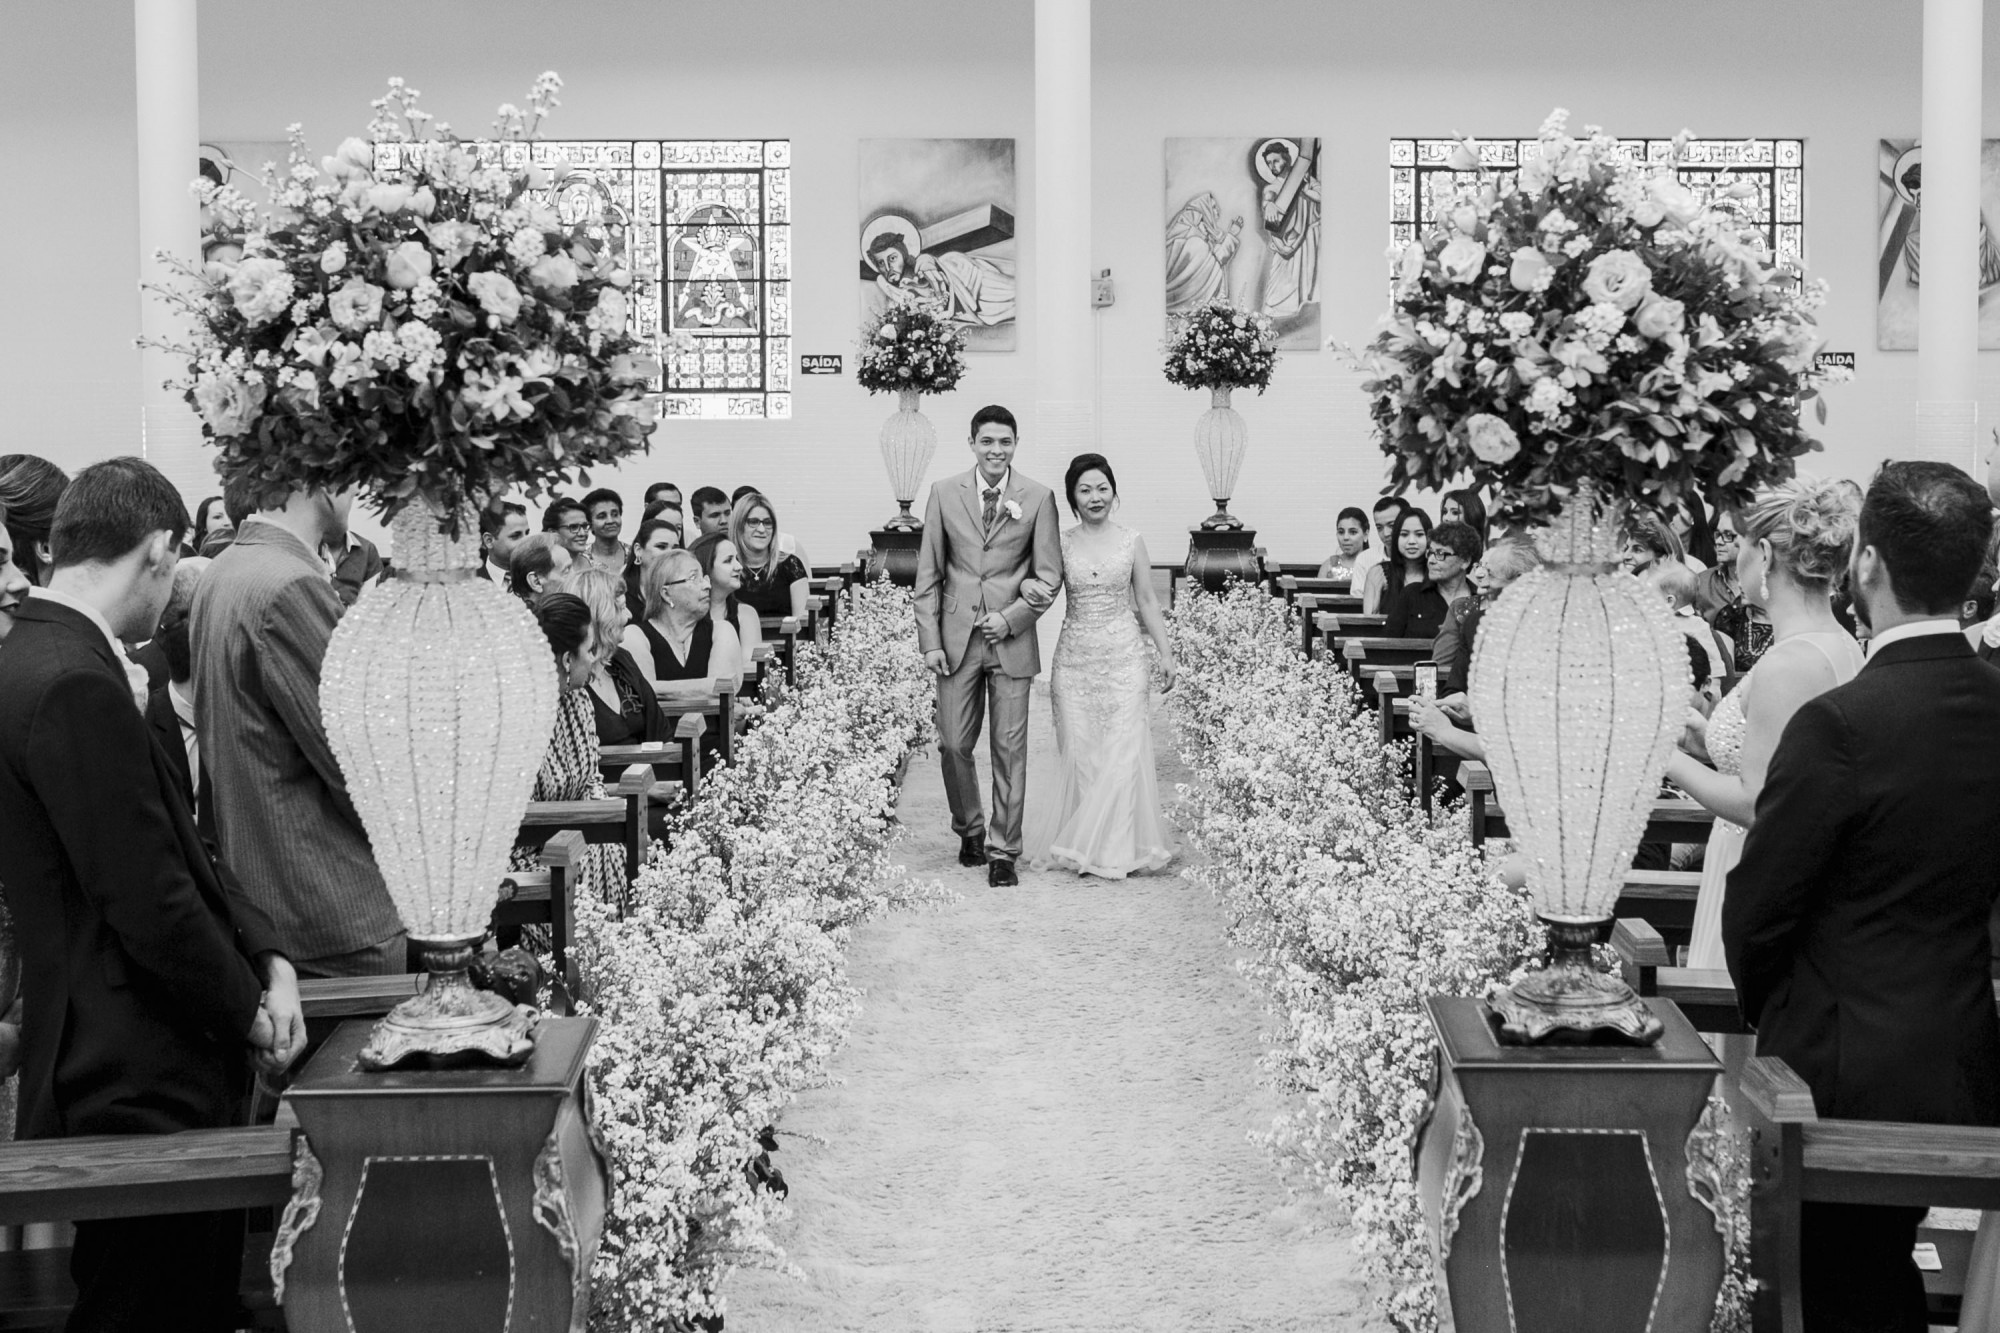 Casamento Camila Rampim e Rafael em Terra Roxa - Paraná - por Lorran Souza e Léia Sotile - fotografos de casamentos - 18